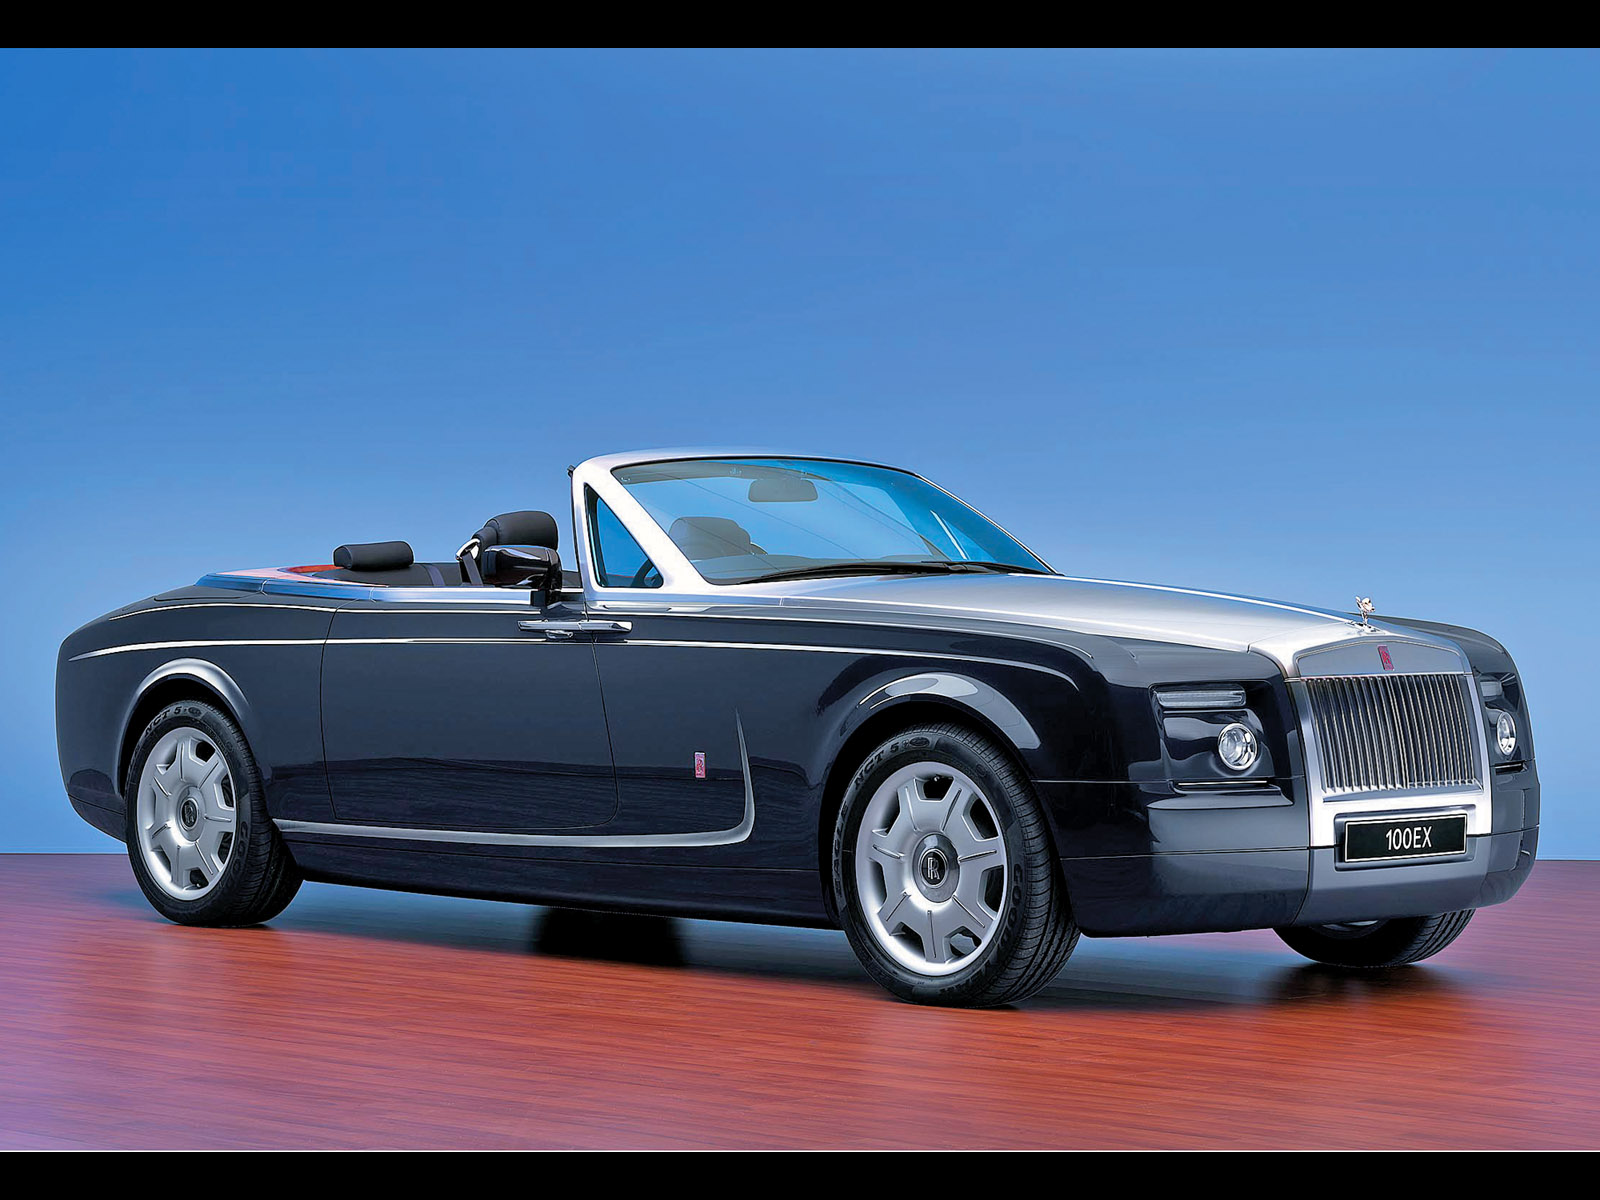 2004, Rolls, Royce, 100ex, Concept, Luxury Wallpaper